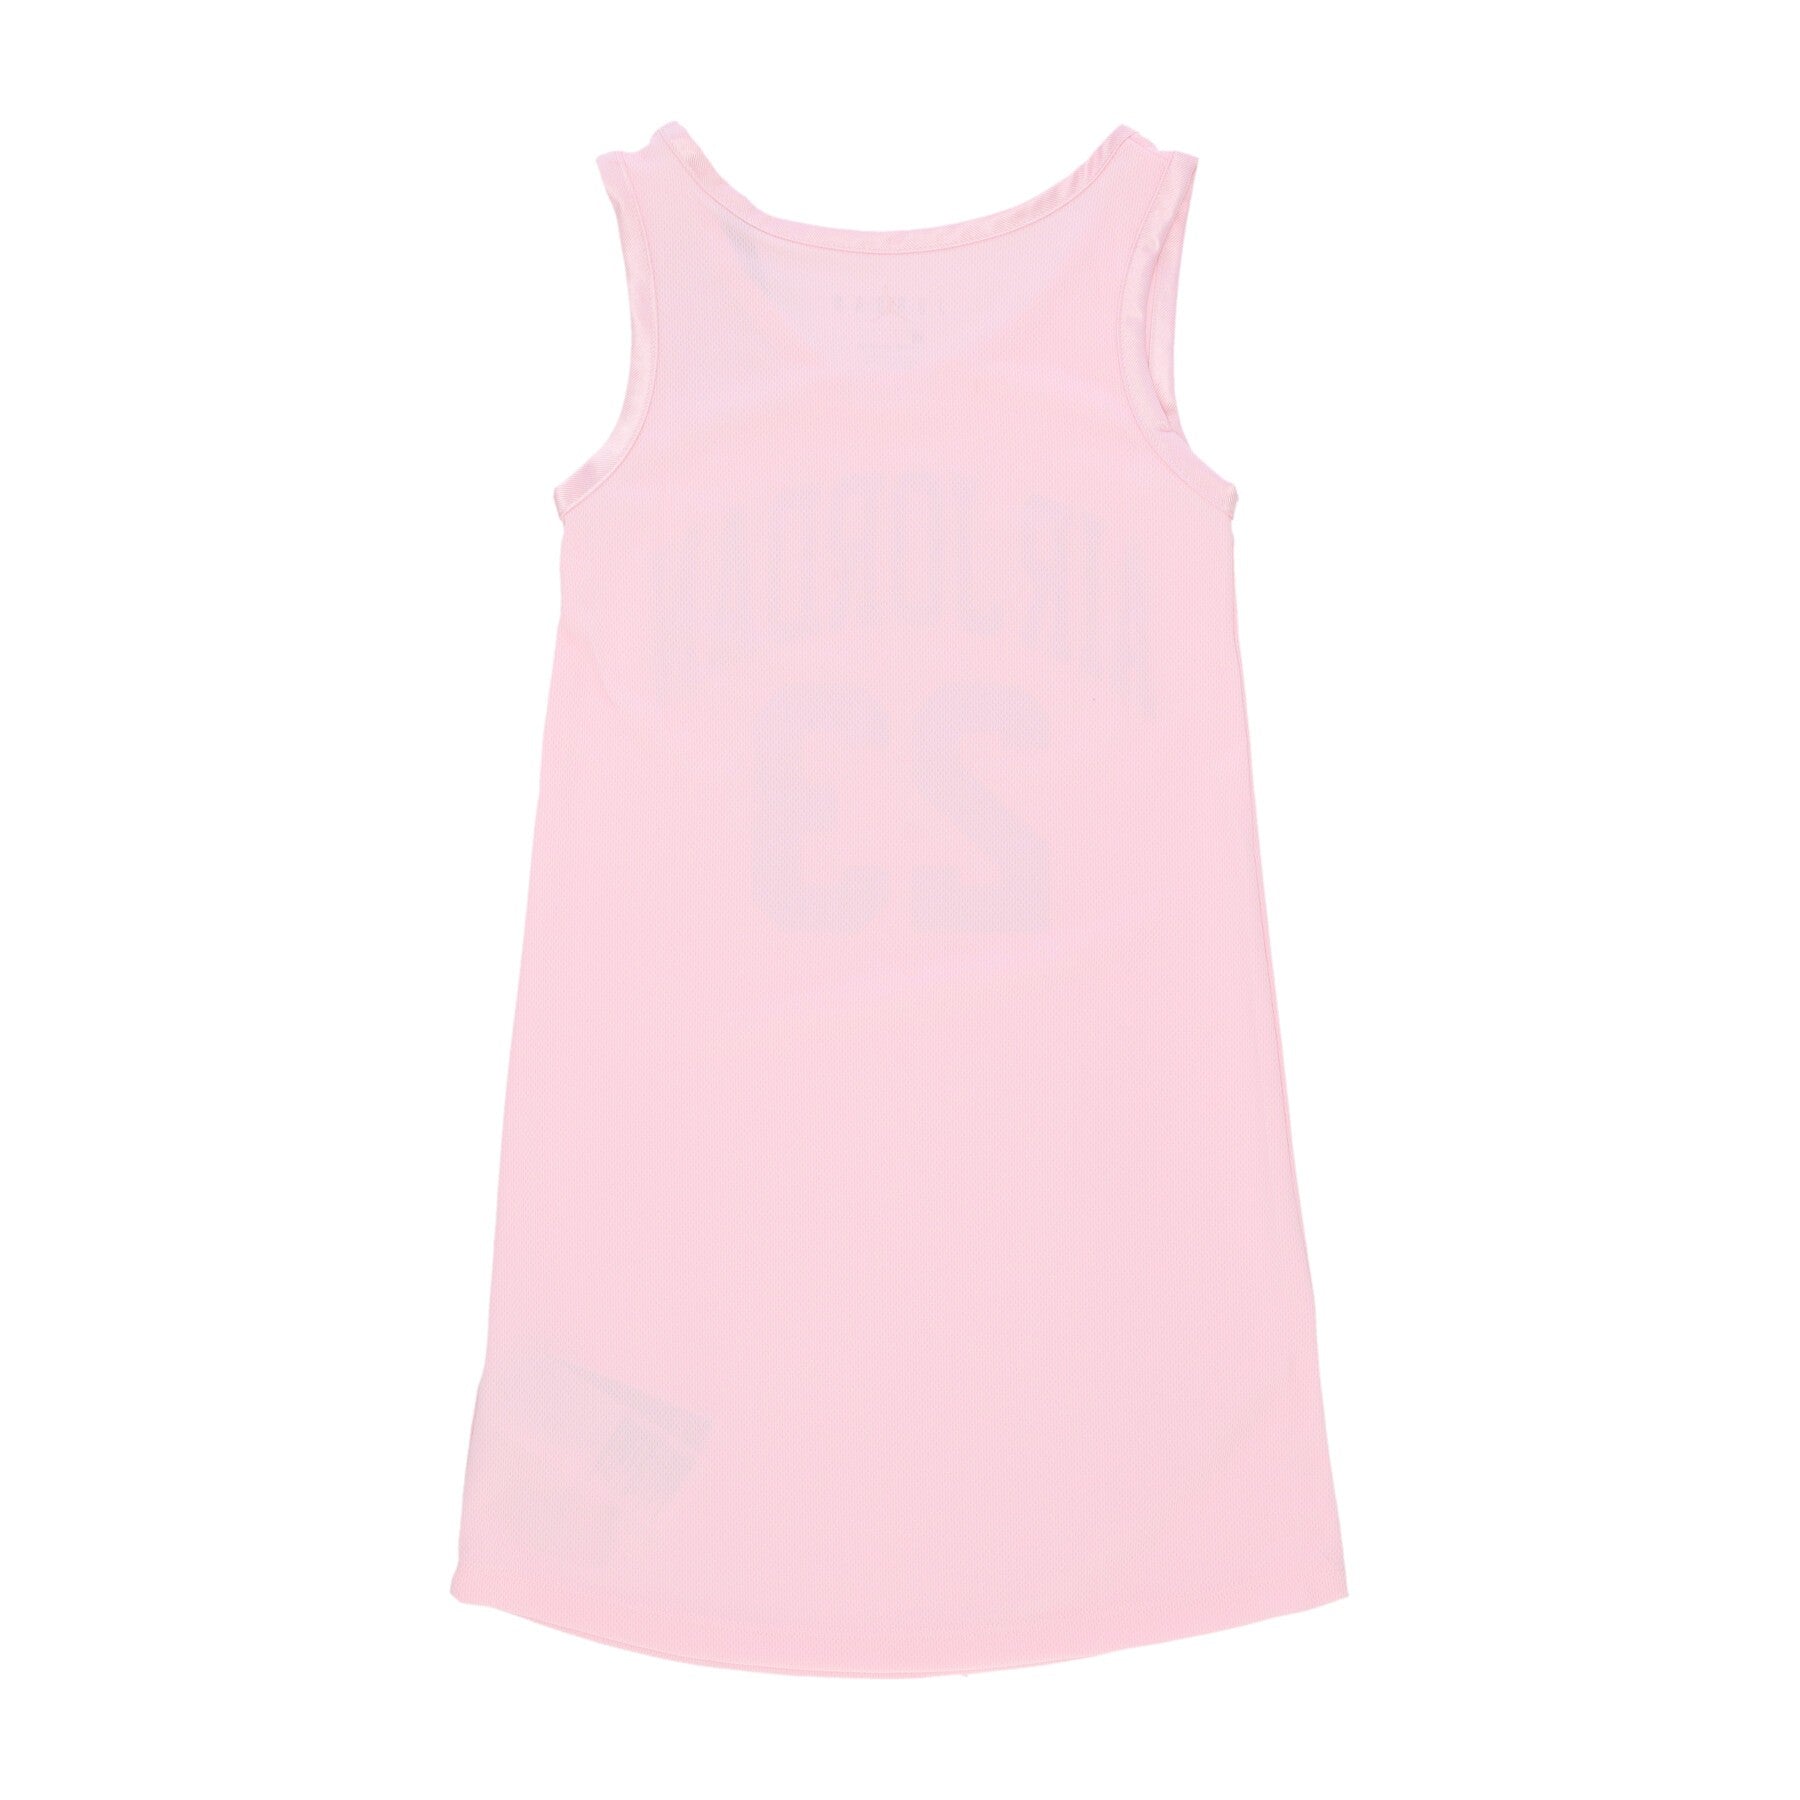 Basketball Type Tank Top Girl Hbr Jersey Dress Pink Foam